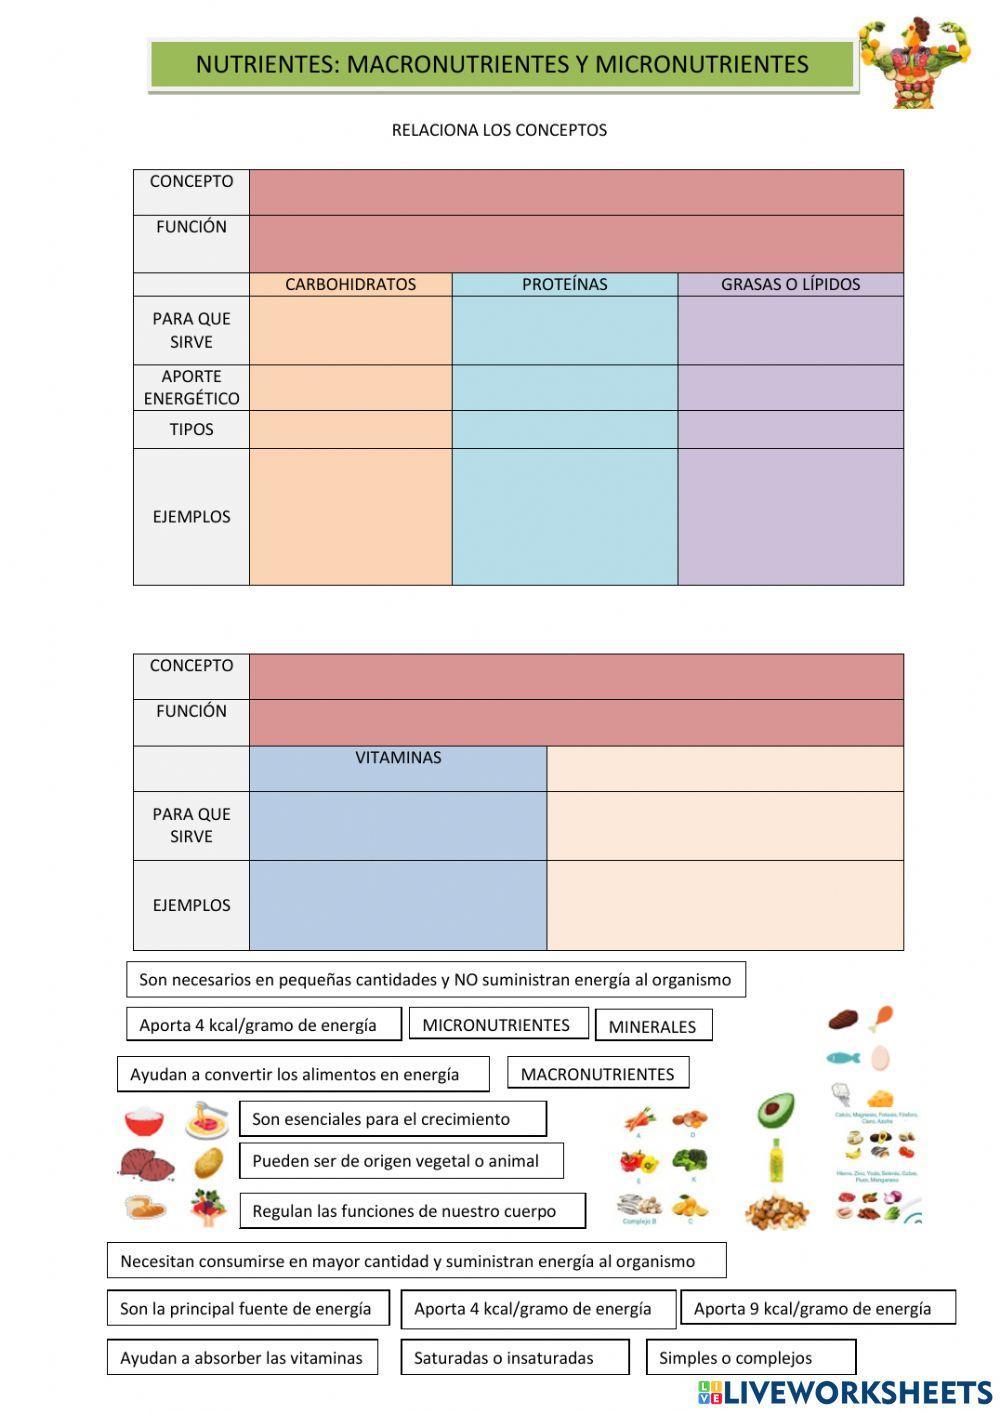 Nutrientes: macronutrientes y micronutrientes